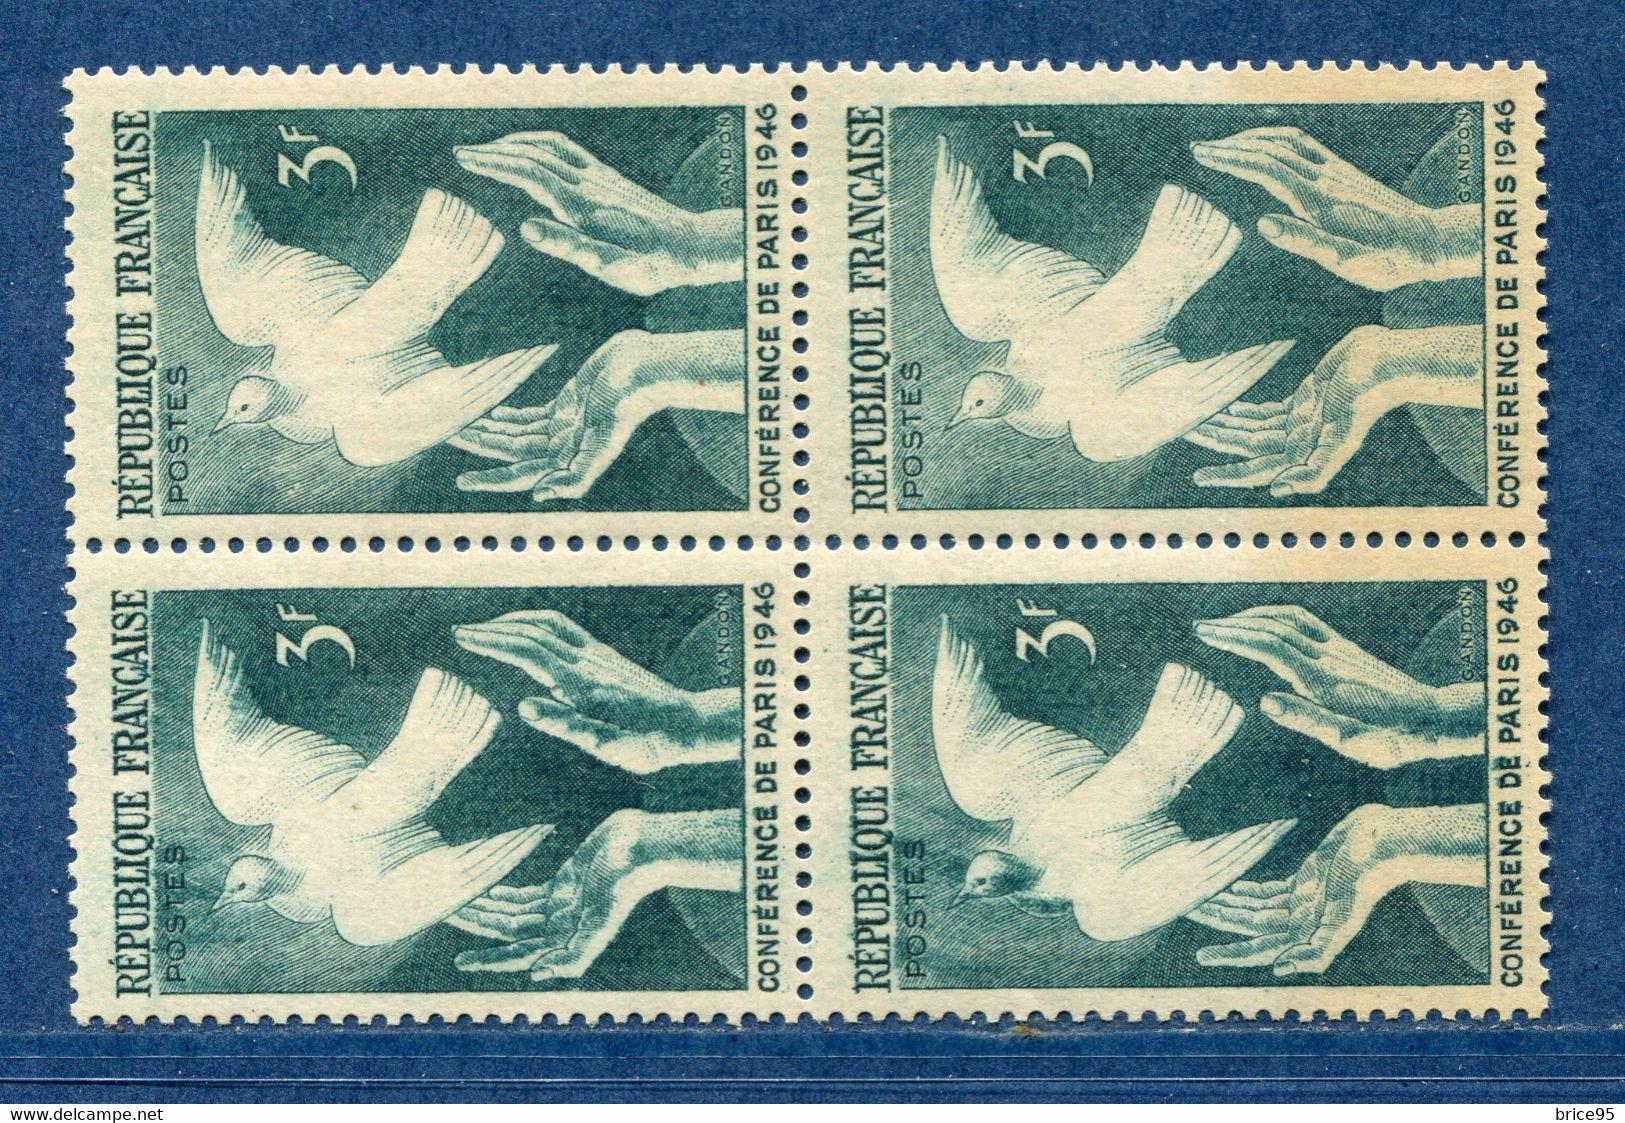 ⭐ France - Variété - YT N° 761 - Couleurs - Pétouille - Trainée De Couleur - Signé - Neuf Sans Charnière - 1946 ⭐ - Unused Stamps